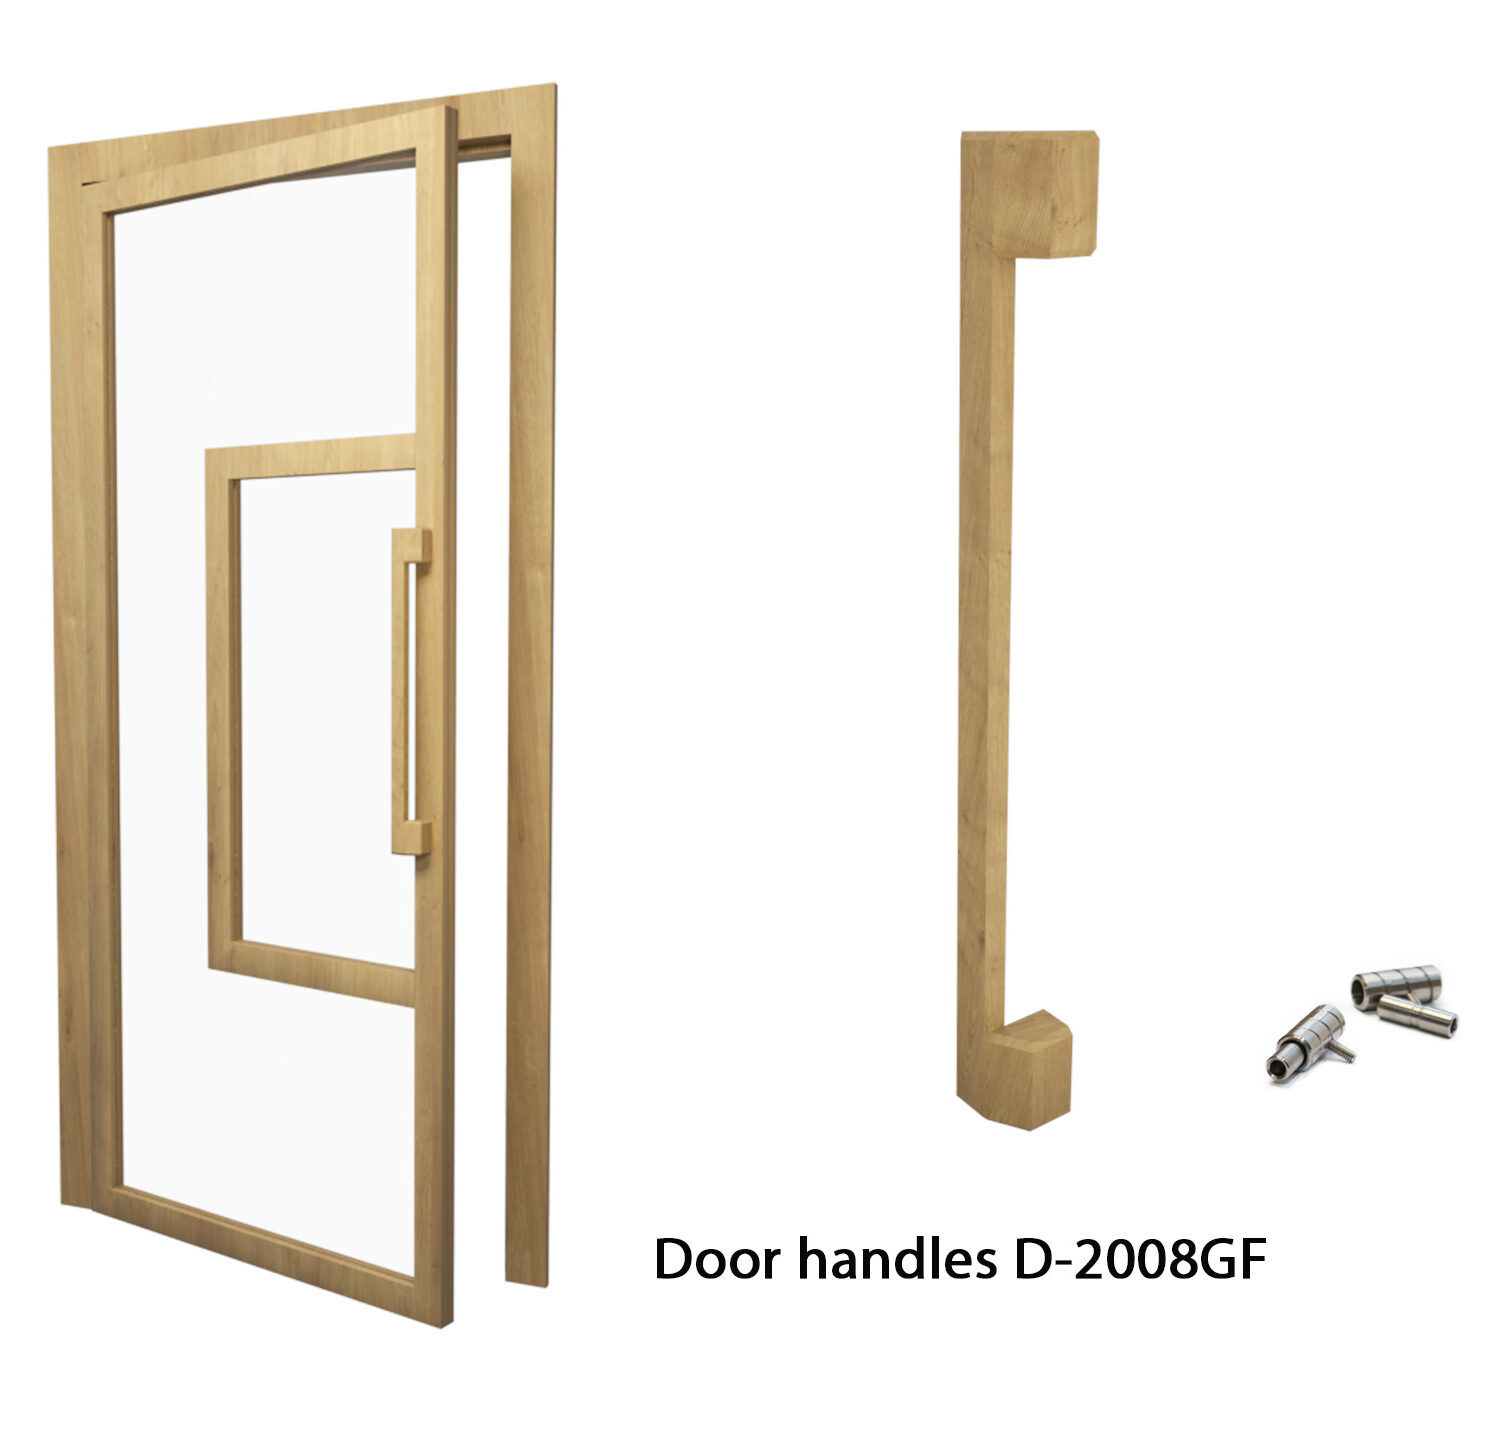 Long door knob D-2008GF of solid wood